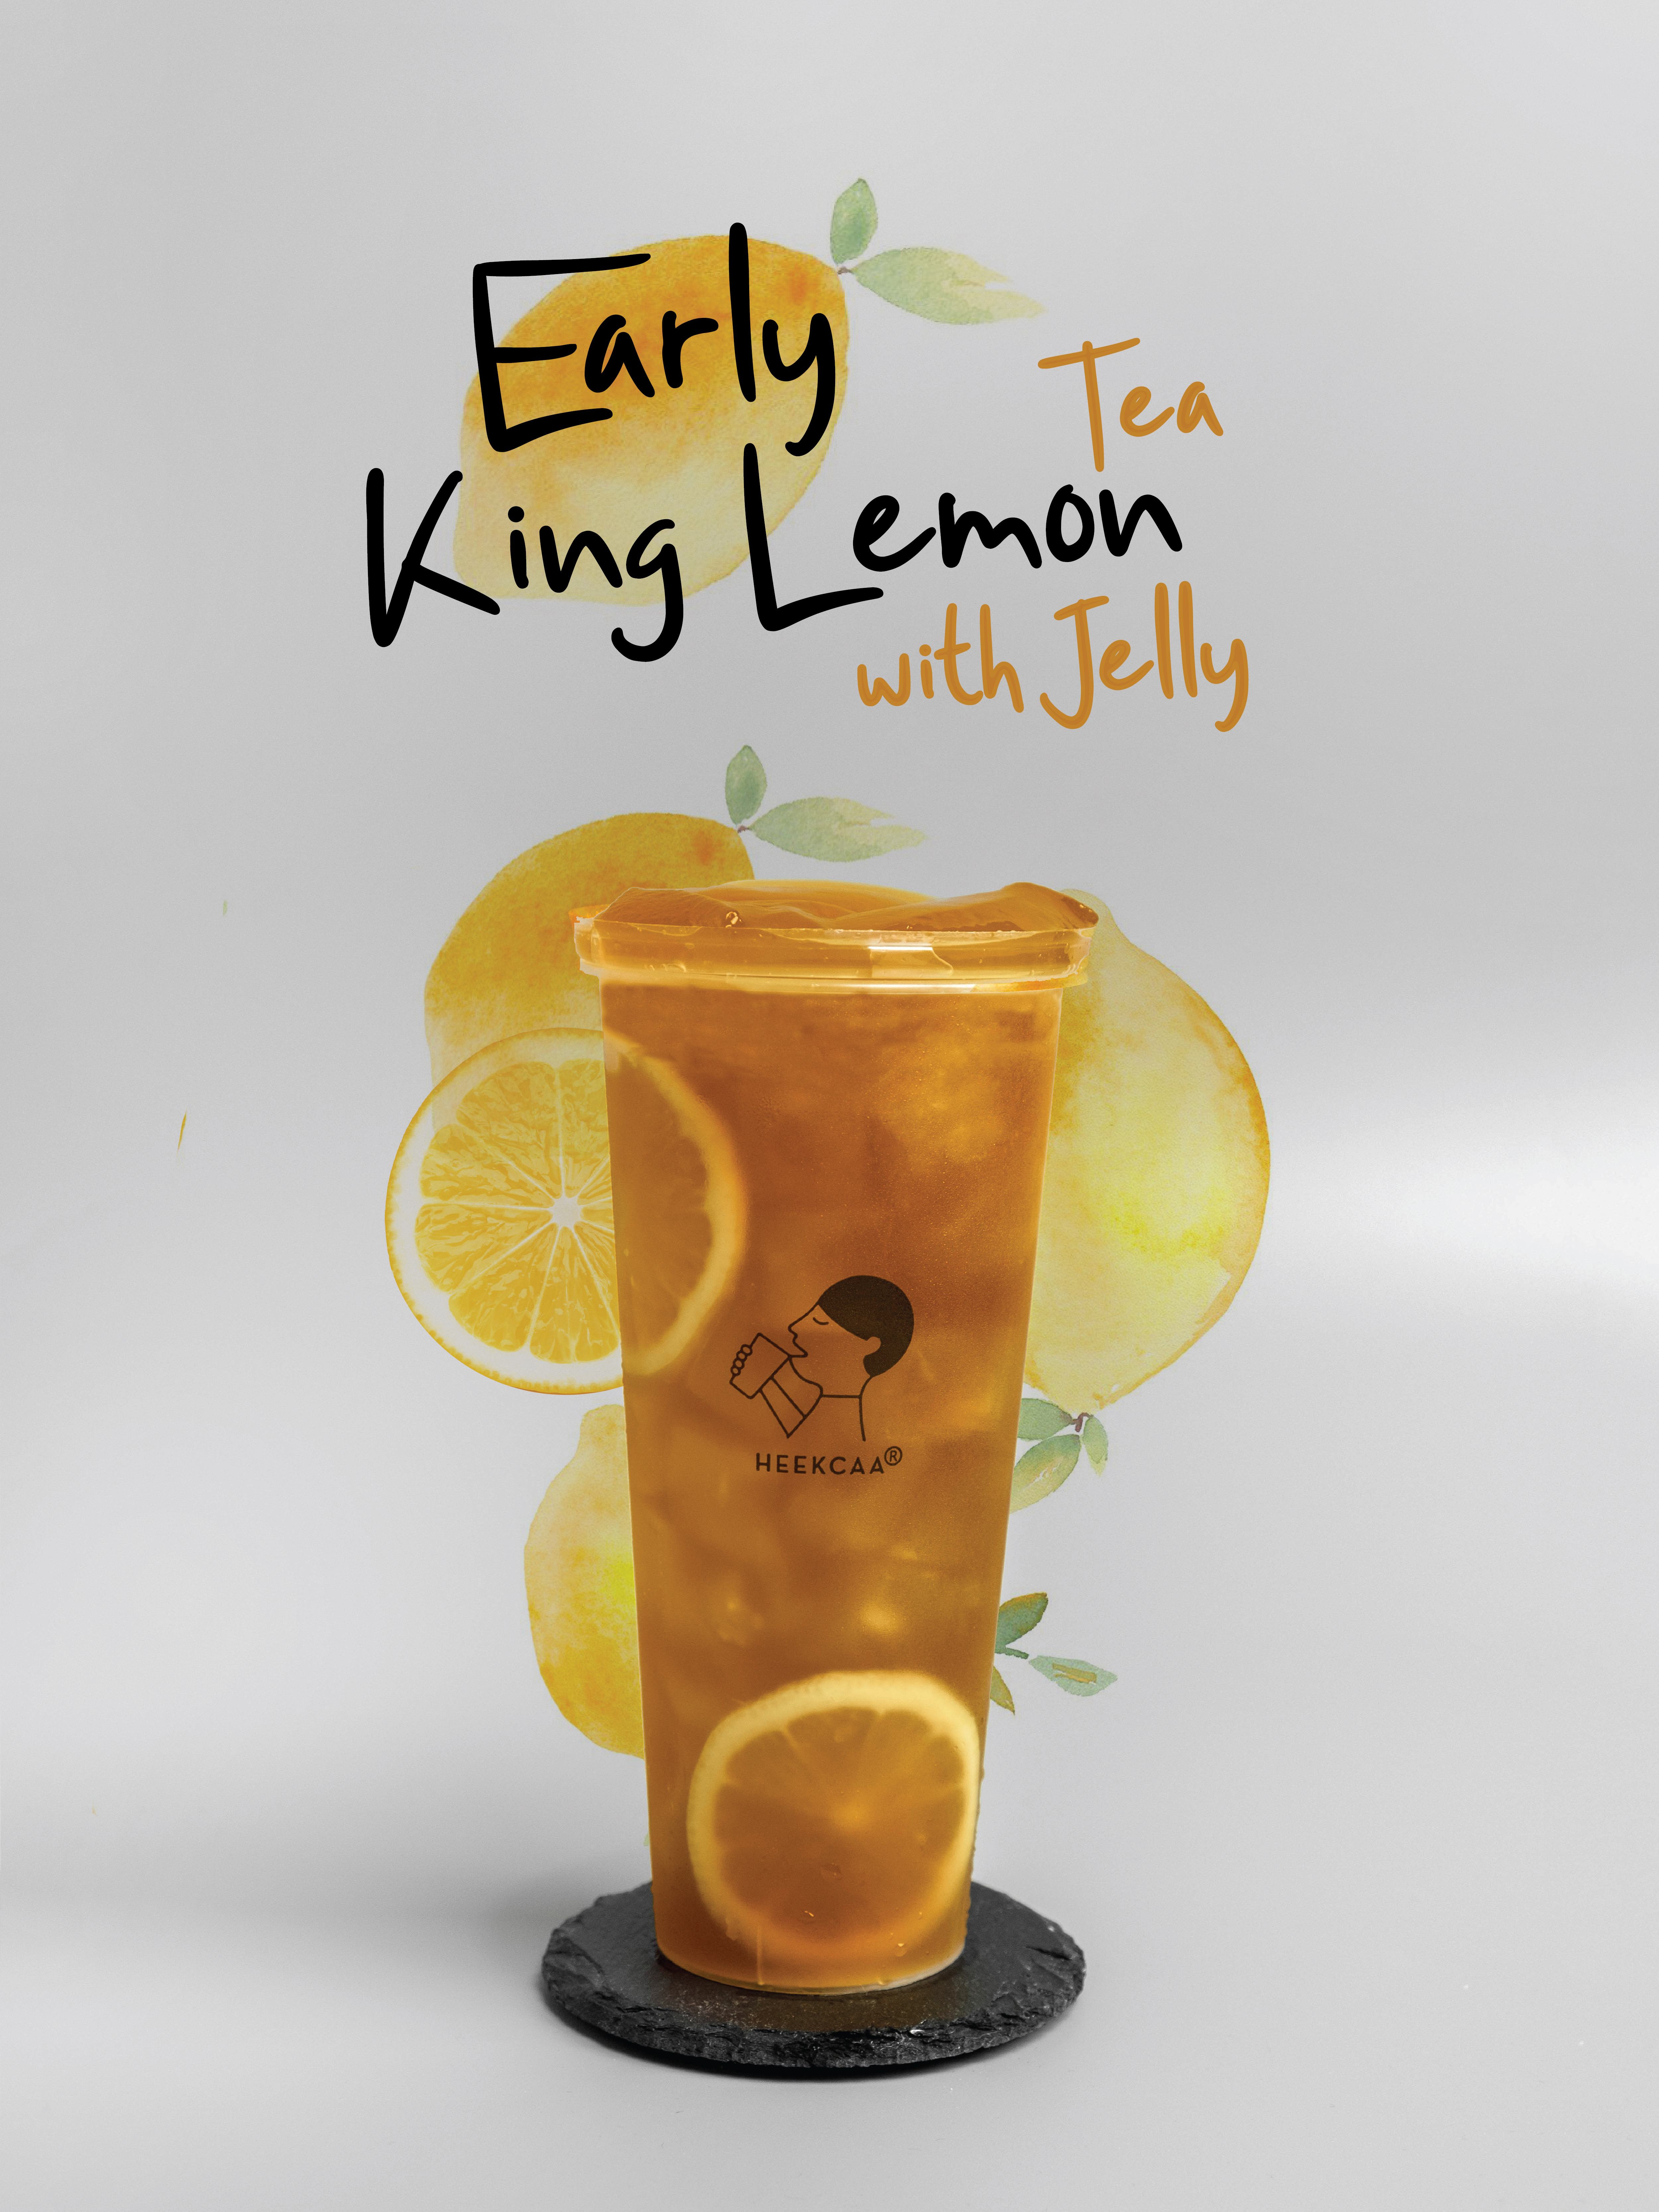 Early King Lemon Tea